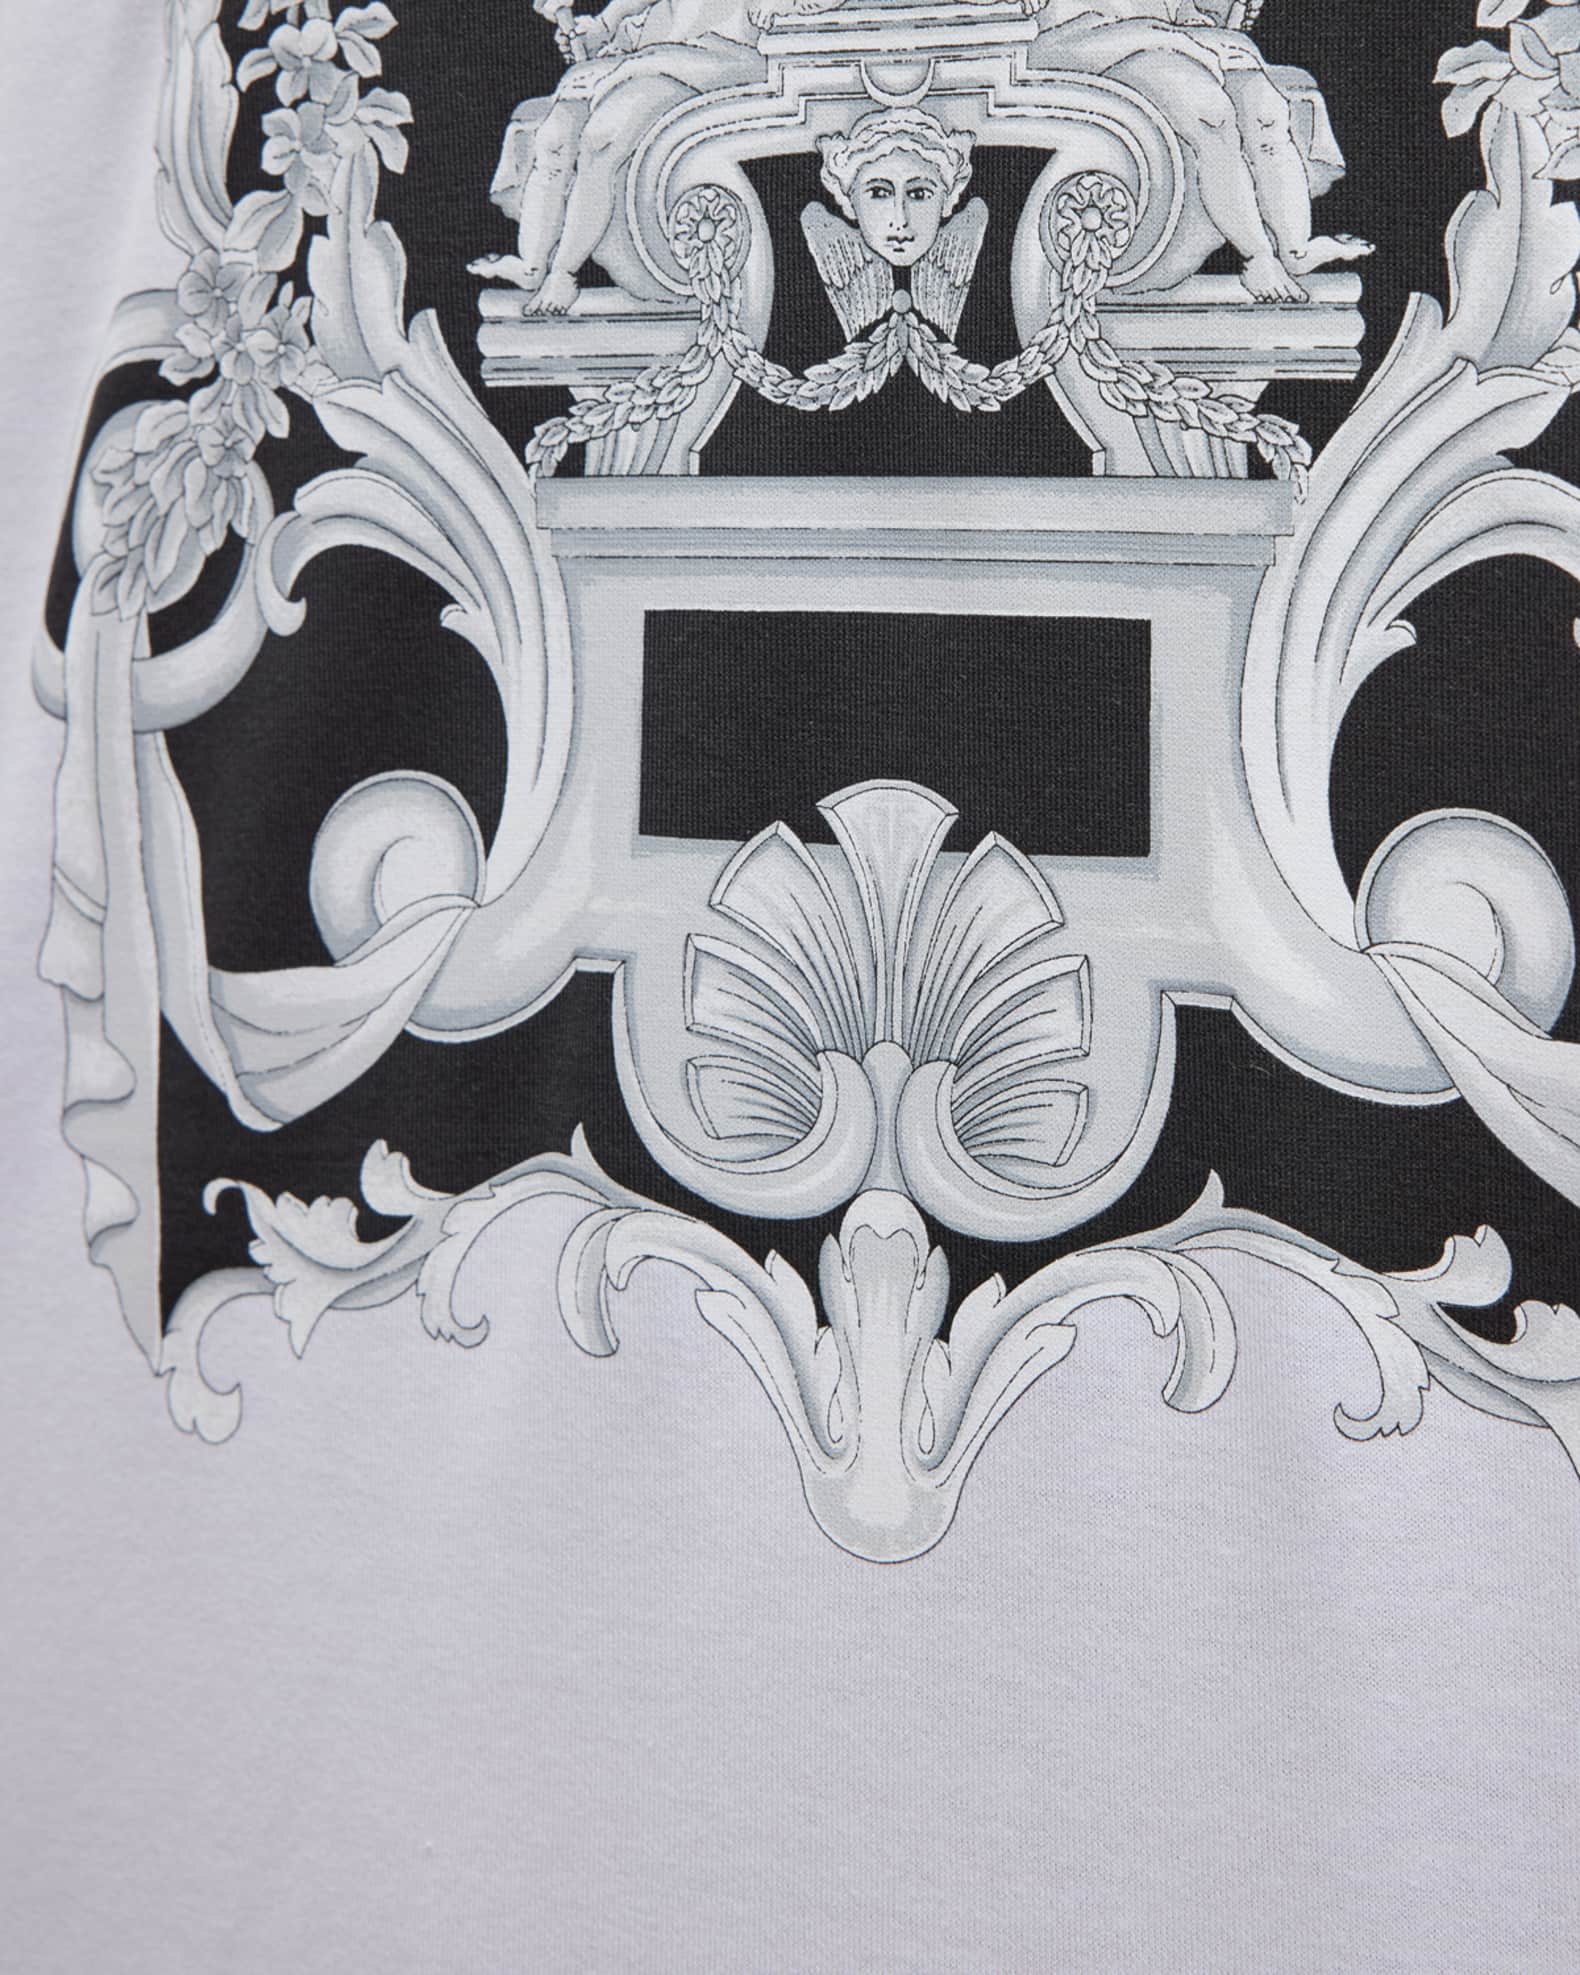 Versace Men's Crest Logo T-Shirt | Neiman Marcus